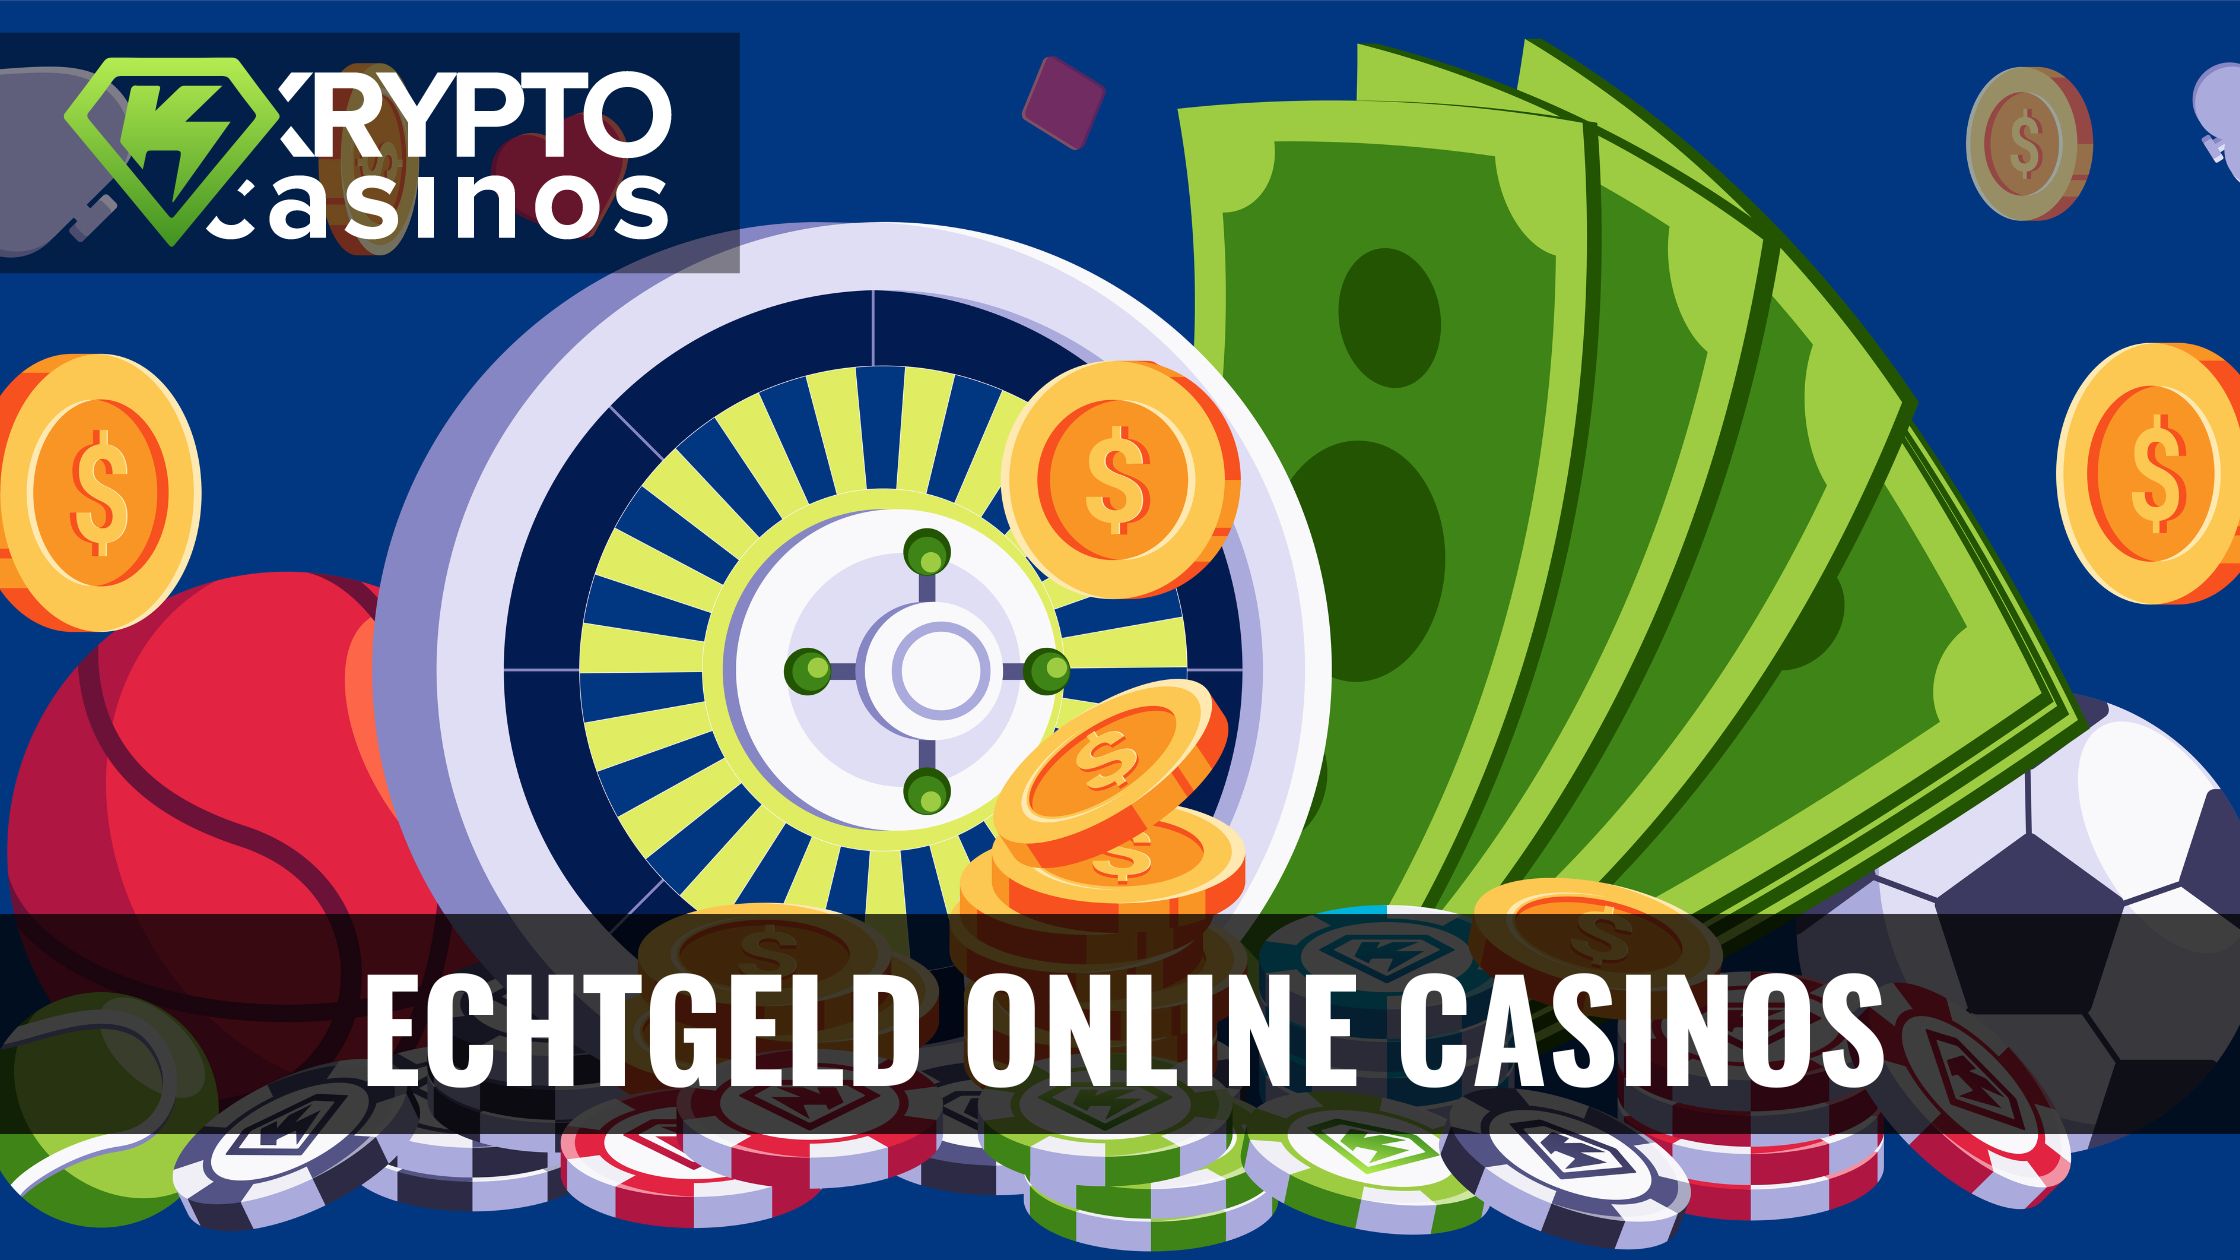 Die Wahrheit über Online Casino Österreich meinbezirtk.at in 3 Minuten